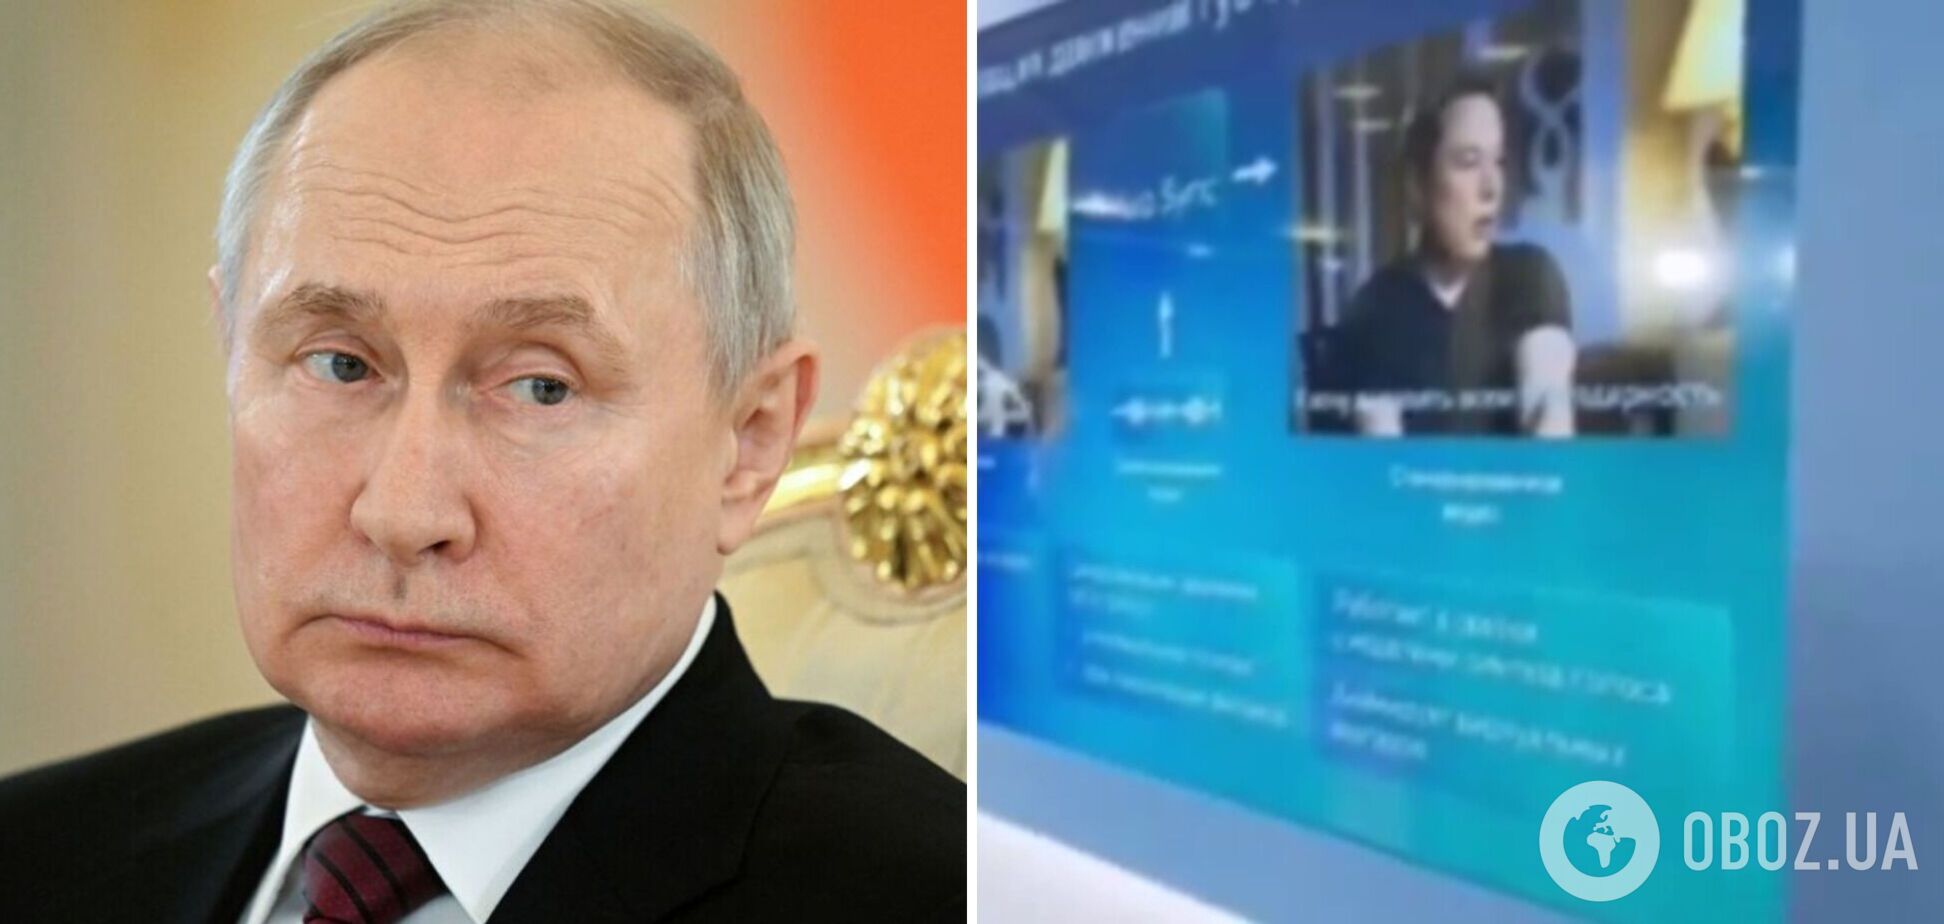 'Жалкое посмешище': в России 'порадовали' Путина сгенерированным видео с благодарностью от Маска, сеть взорвалась комментариями. Видео